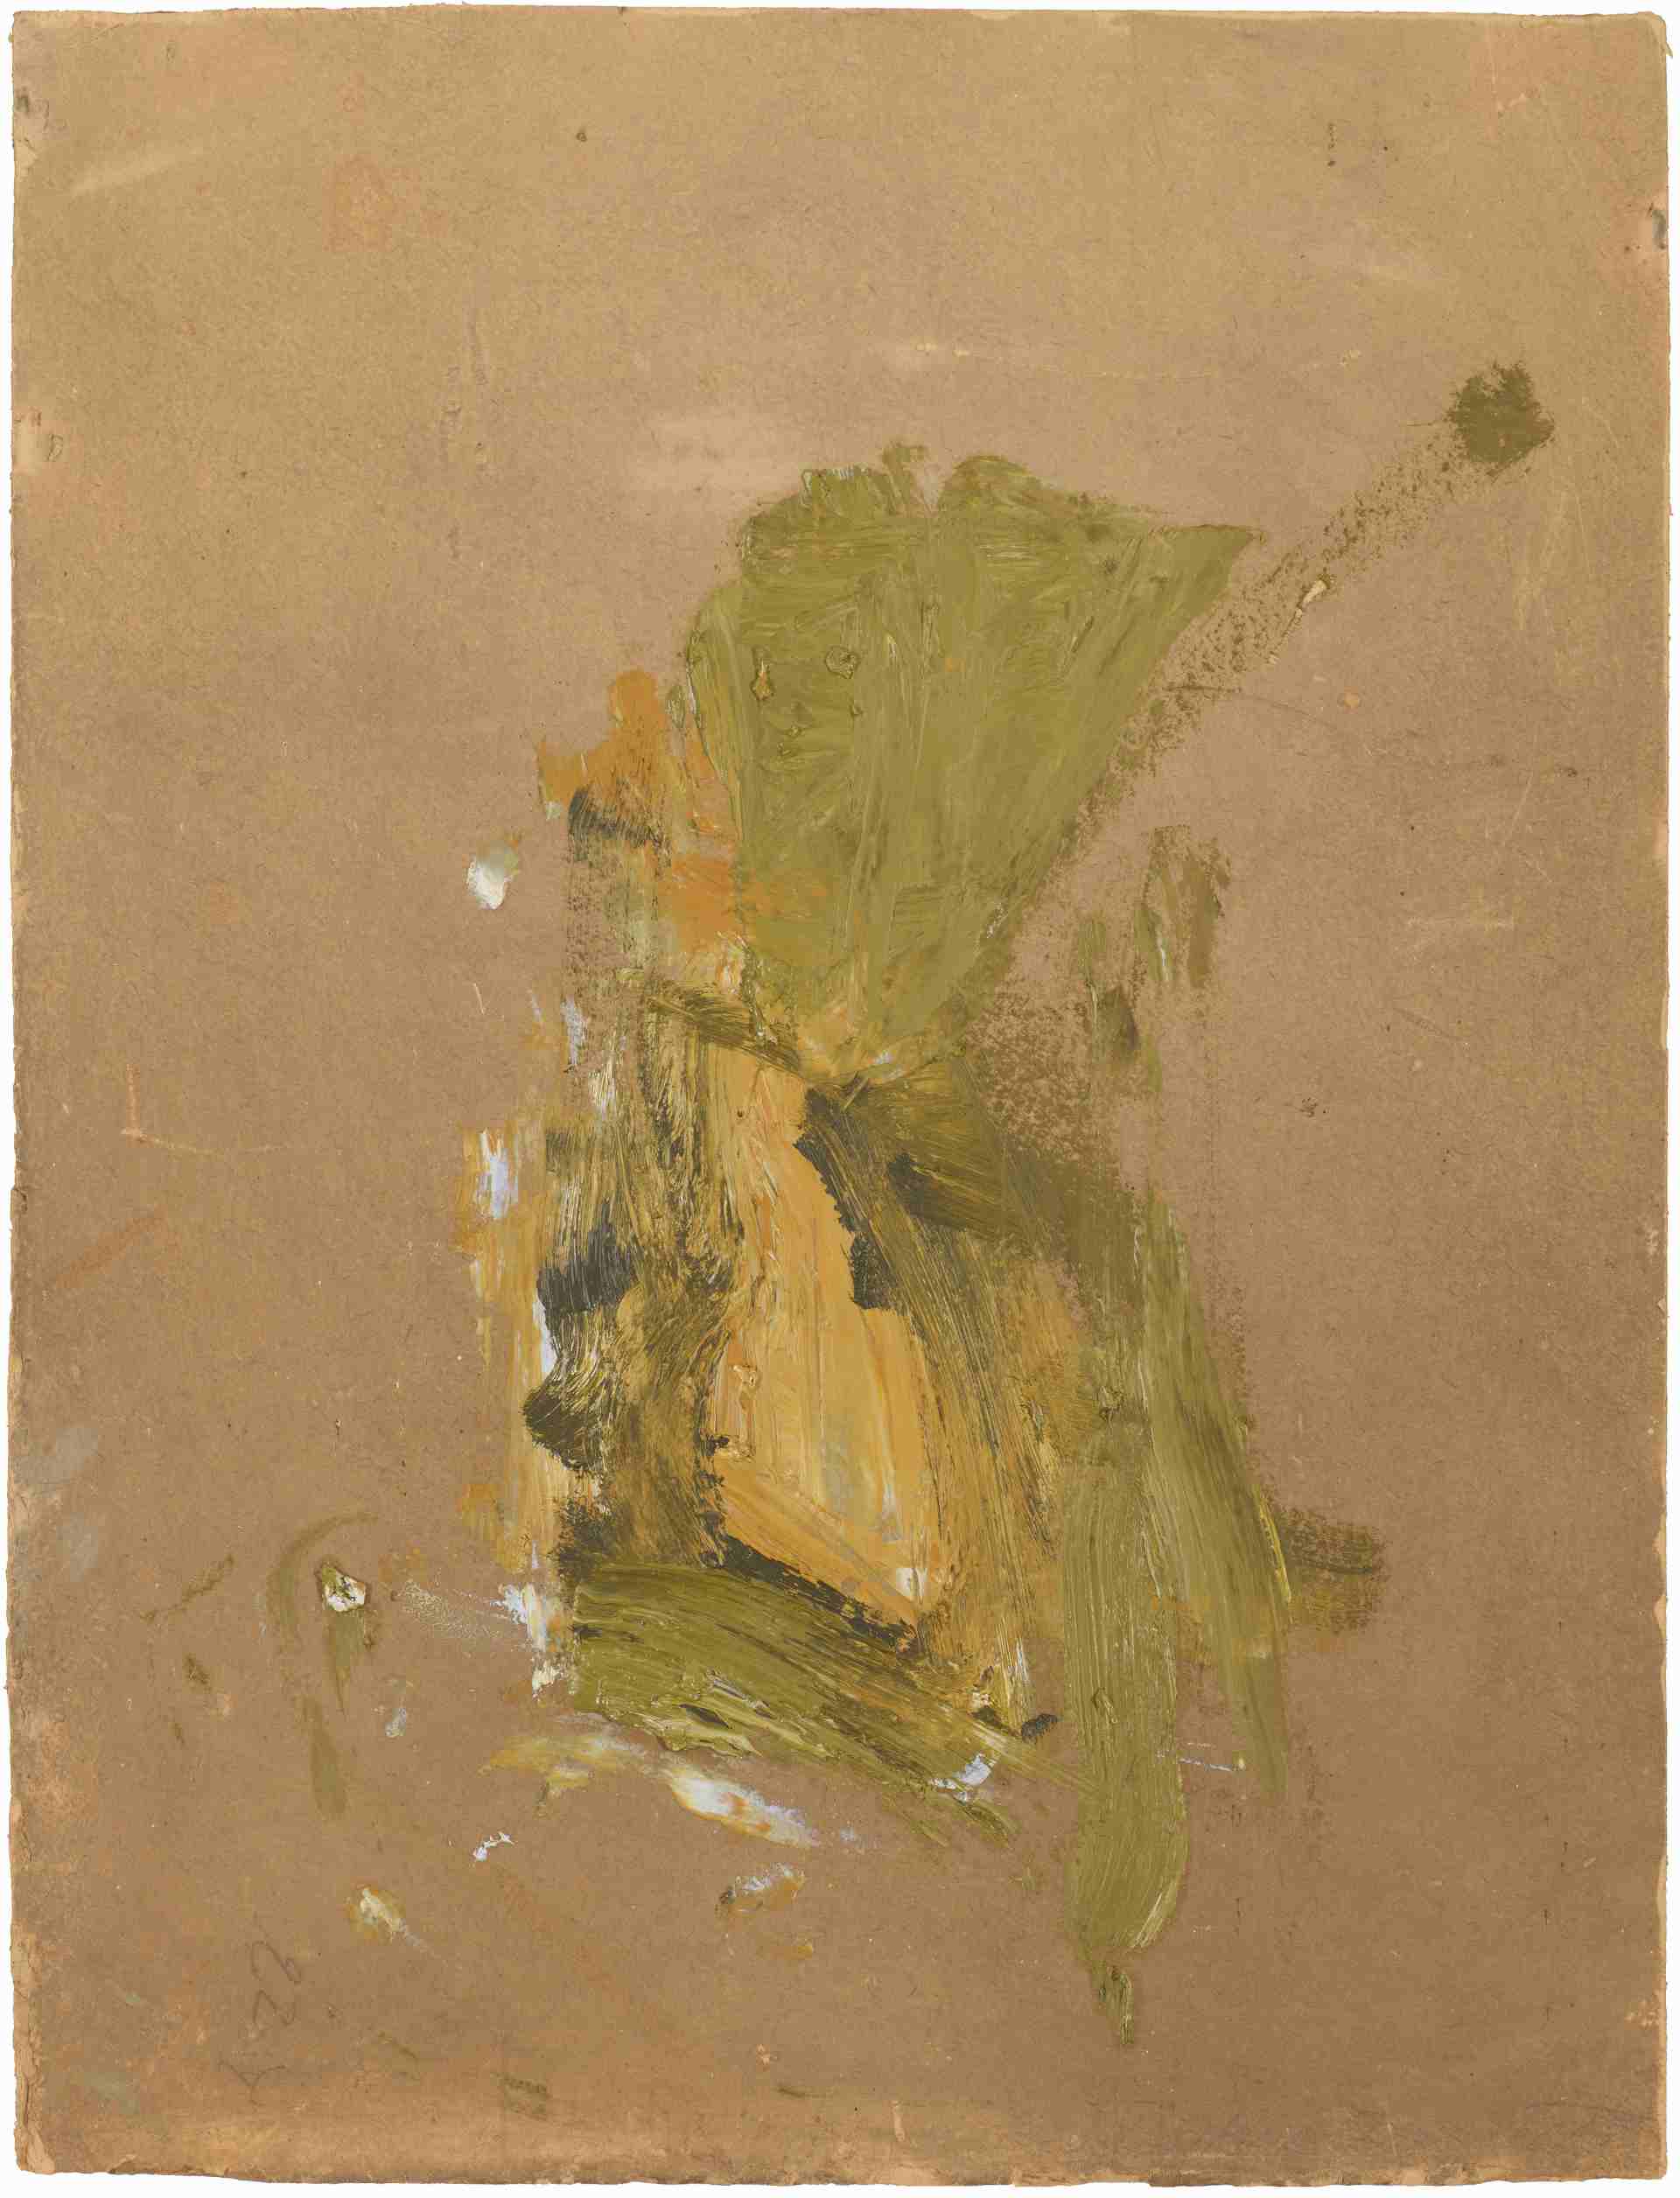 Martha Jungwirth (geb. 1940), O.T., Öl auf dickem Malkarton, 50 x 38 cm, signiert